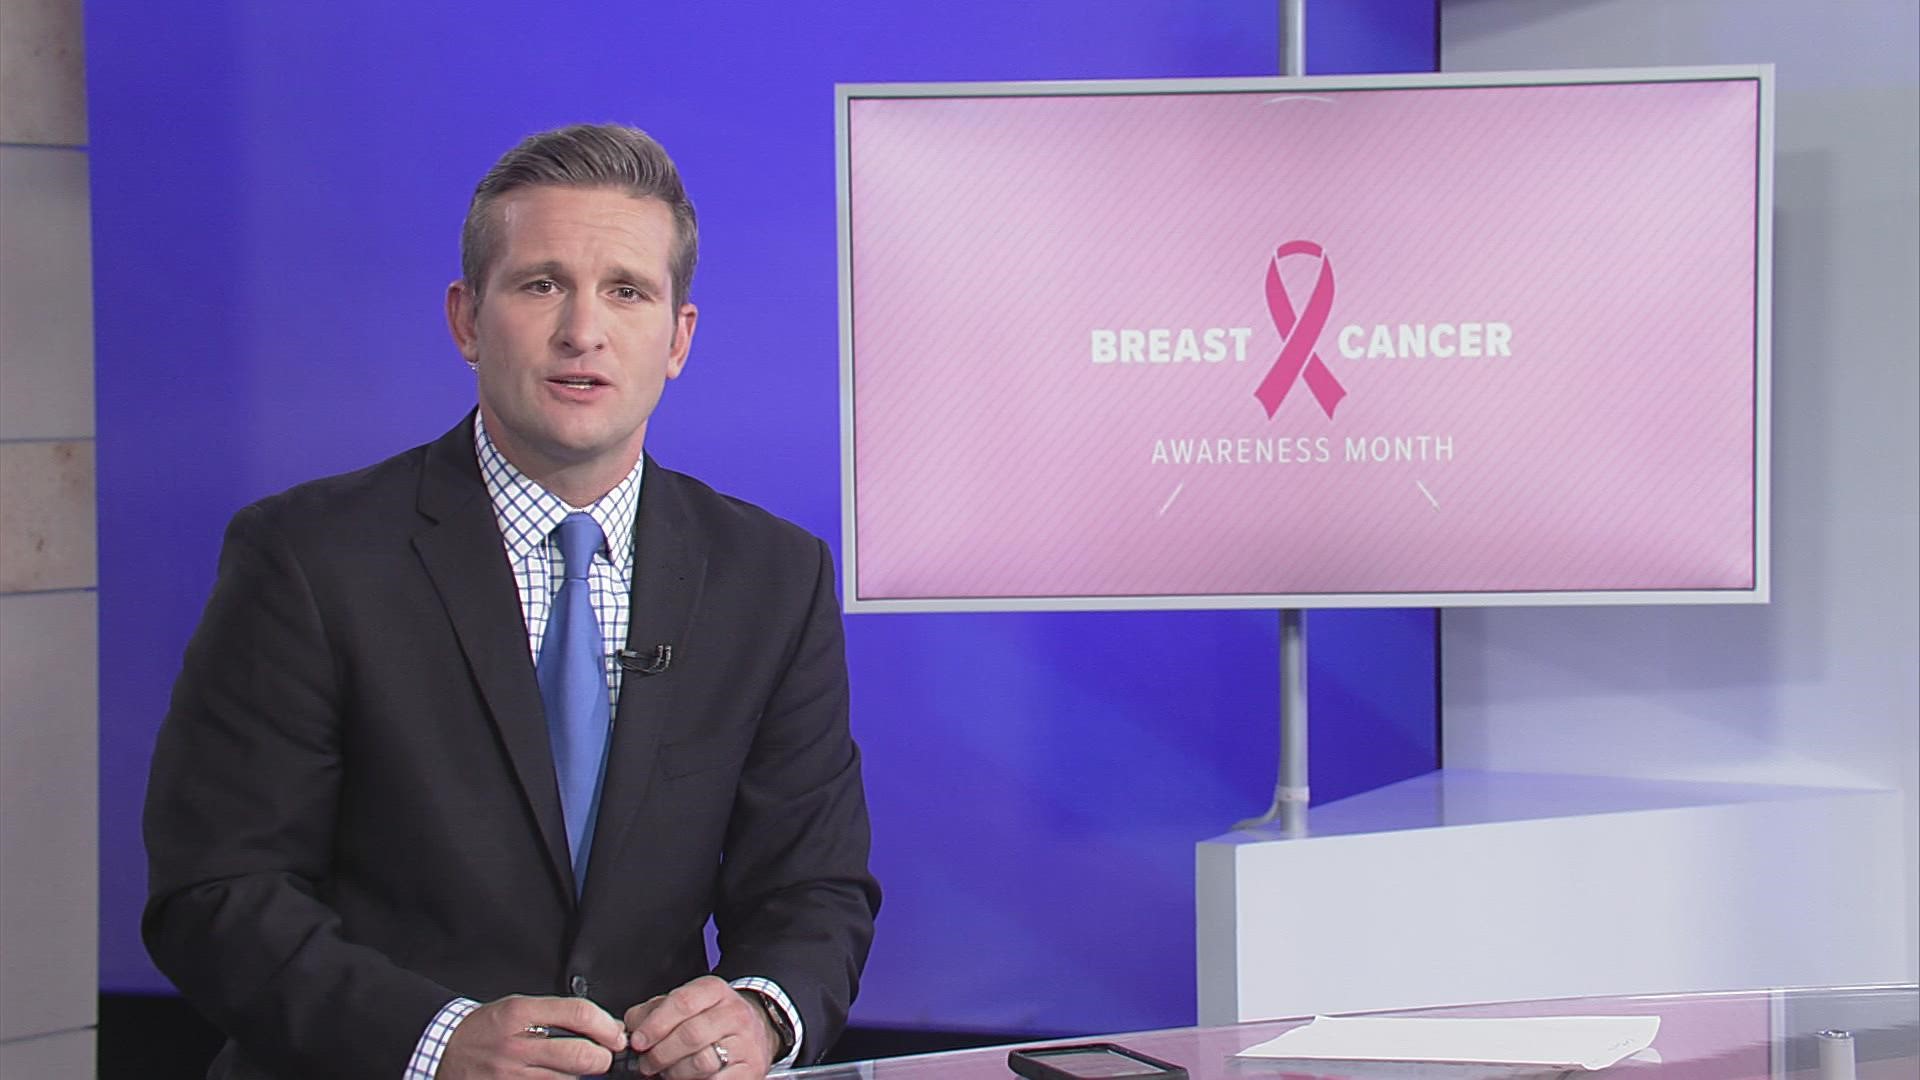 Allison Dusko is encouraging women to get their mammogram.